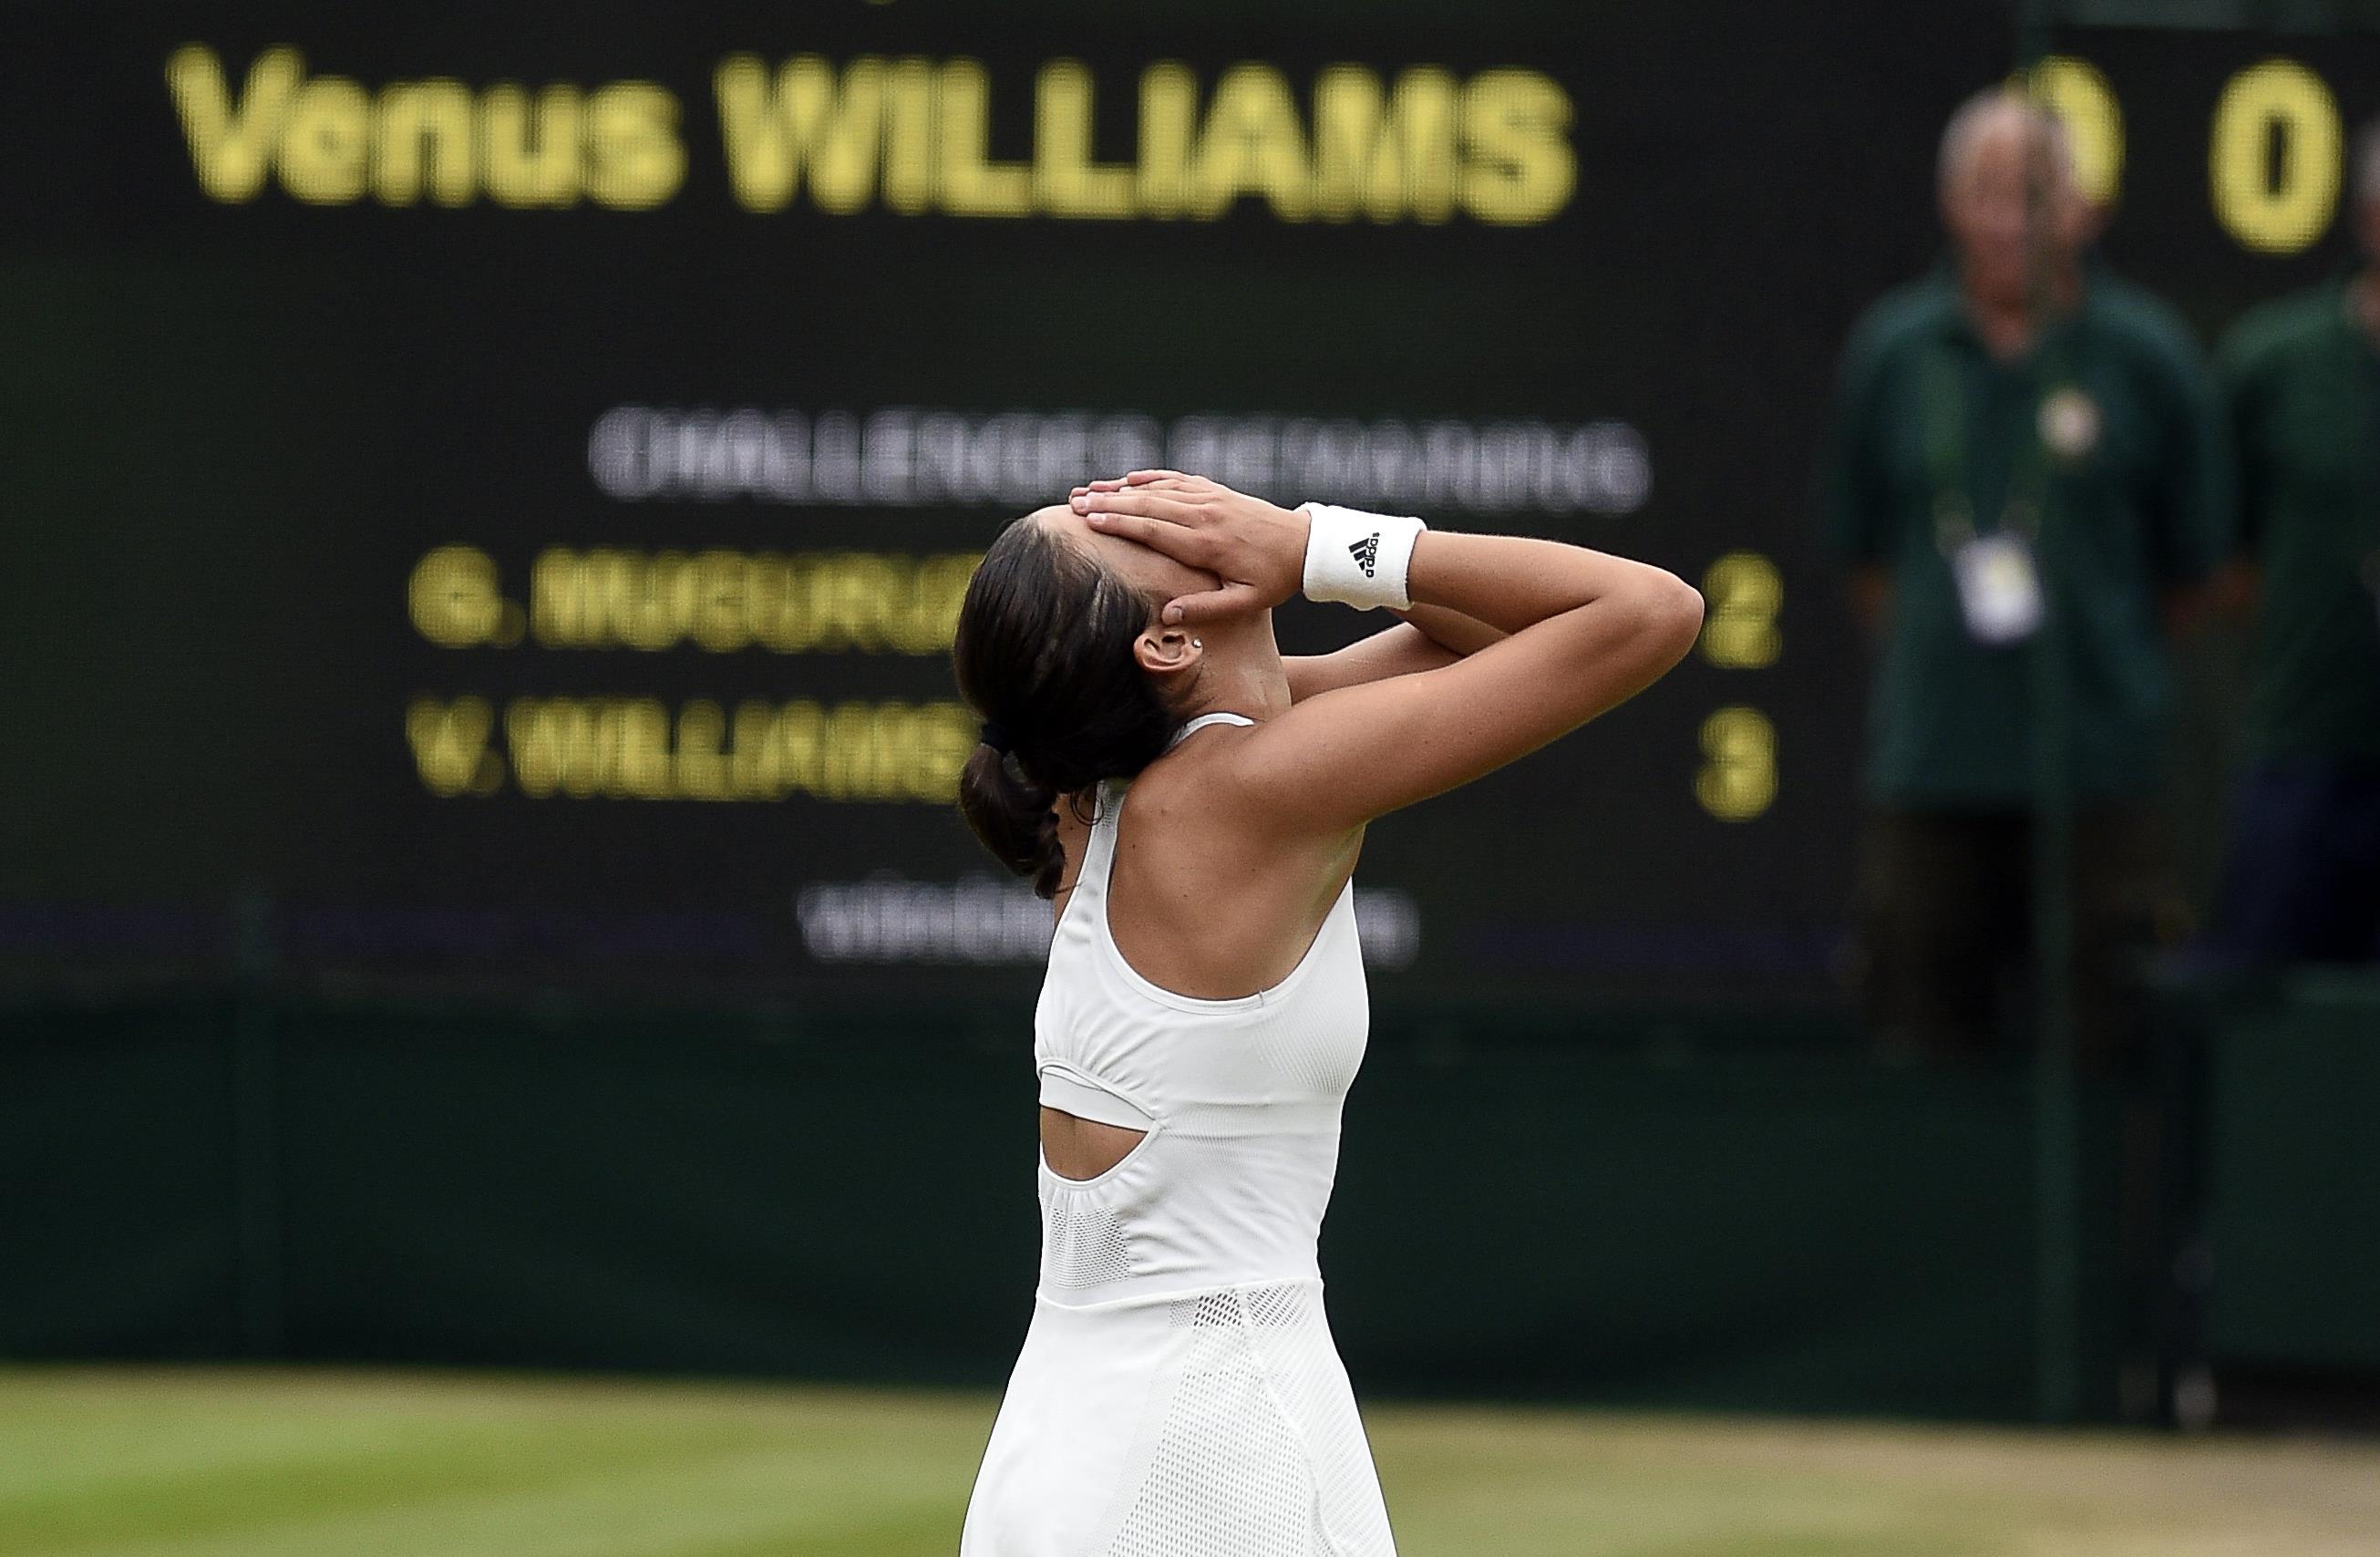 Η Μουγκουρούθα «διέλυσε» τη Βένους και πήρε το Wimbledon